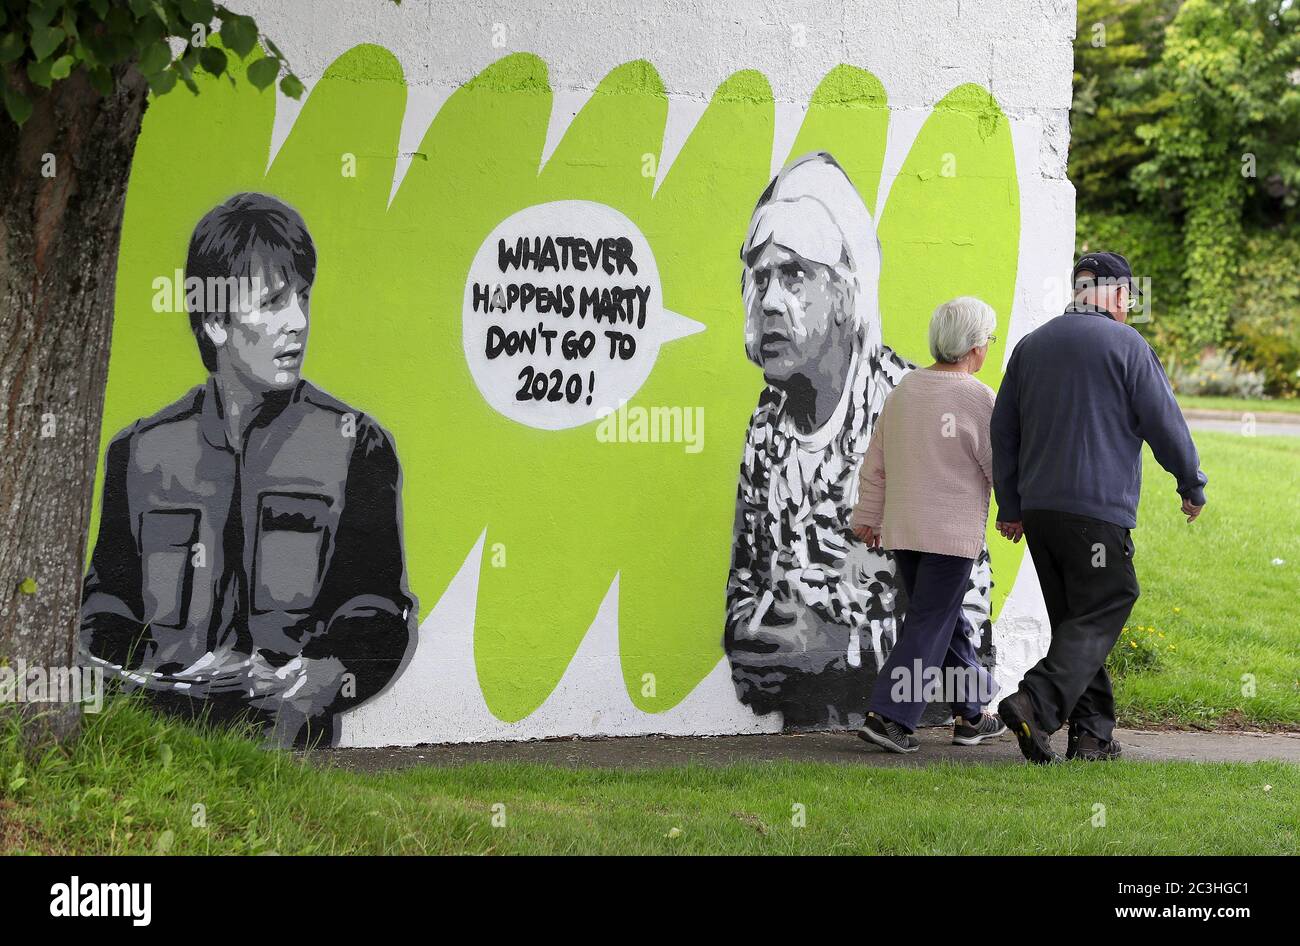 Les gens marchent à côté de la fresque de l'artiste irlandais Emmalene Blake, Marty McFly, et Doc Brown, du film culte des années 80 « Retour vers le futur » dans le sud de Dublin. Il s'agit de la dernière fresque sur le thème du coronavirus de l'artiste de Dublin pendant la pandémie. D'autres artistes ont été présentés, notamment Dua Lipa, Robyn et Cardi B. Banque D'Images